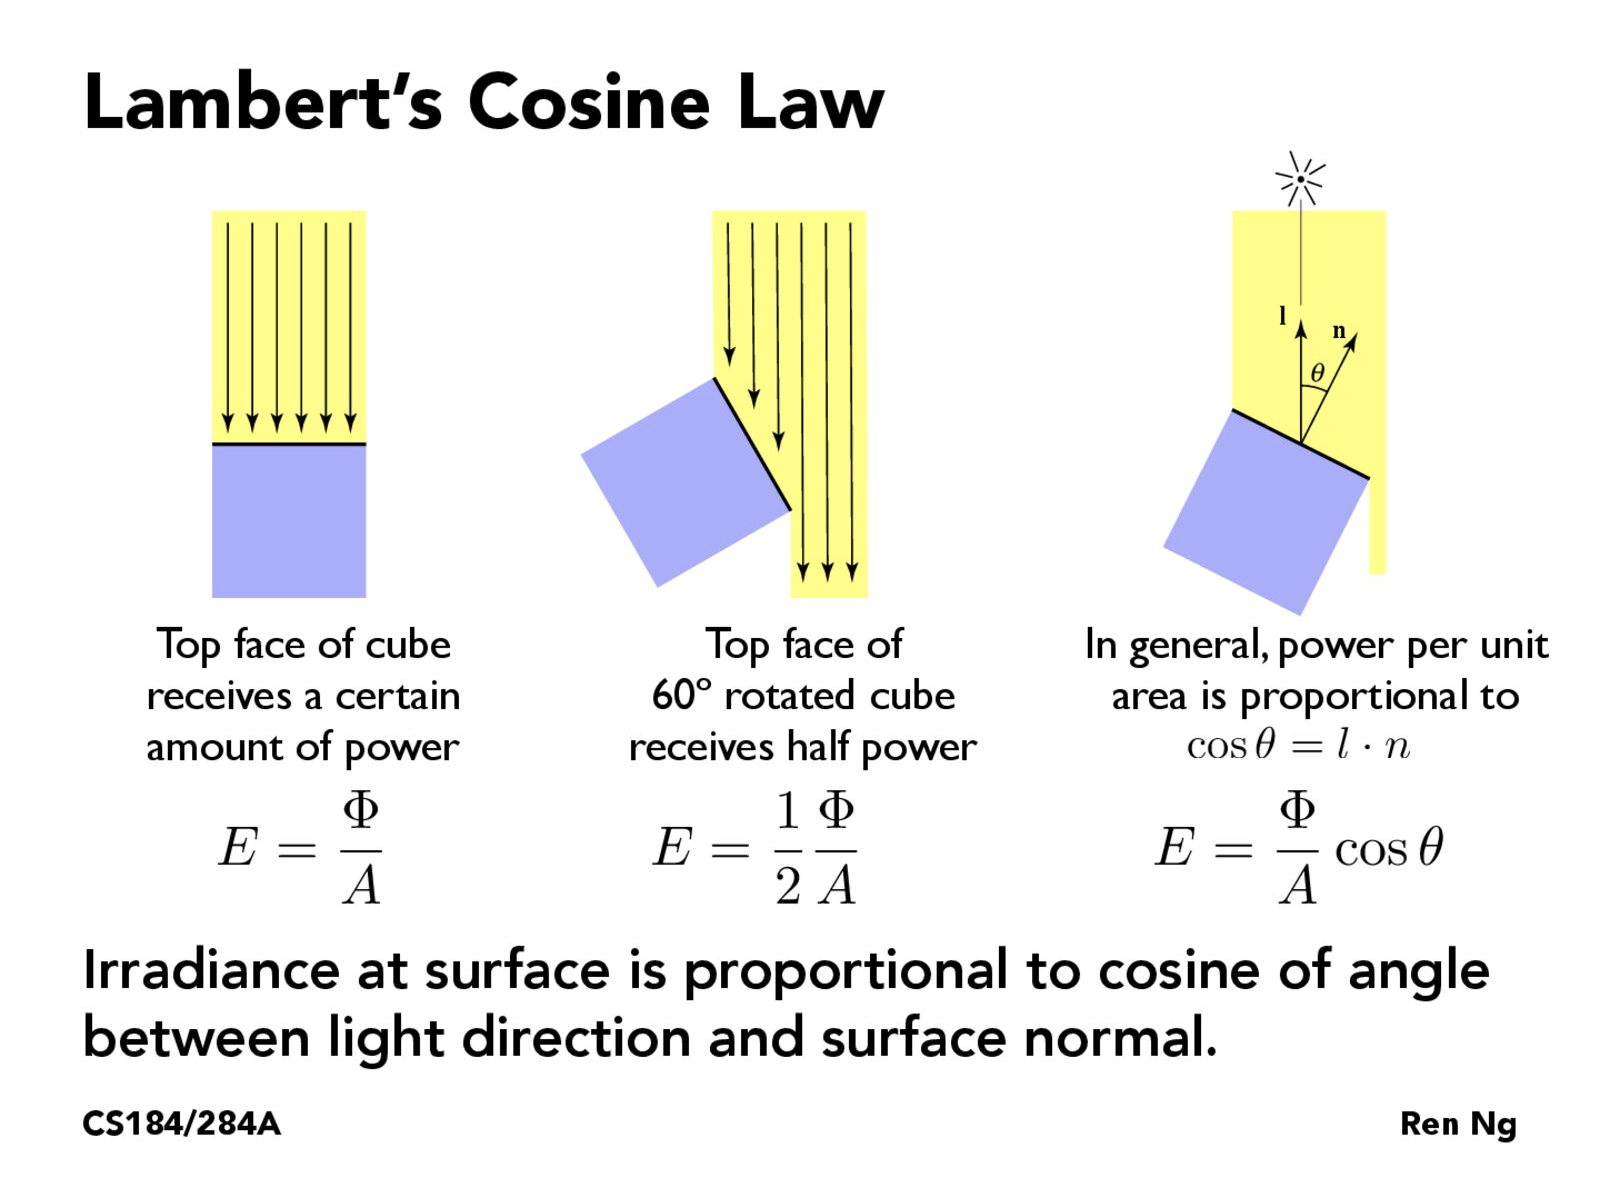 Lambert's cosine law